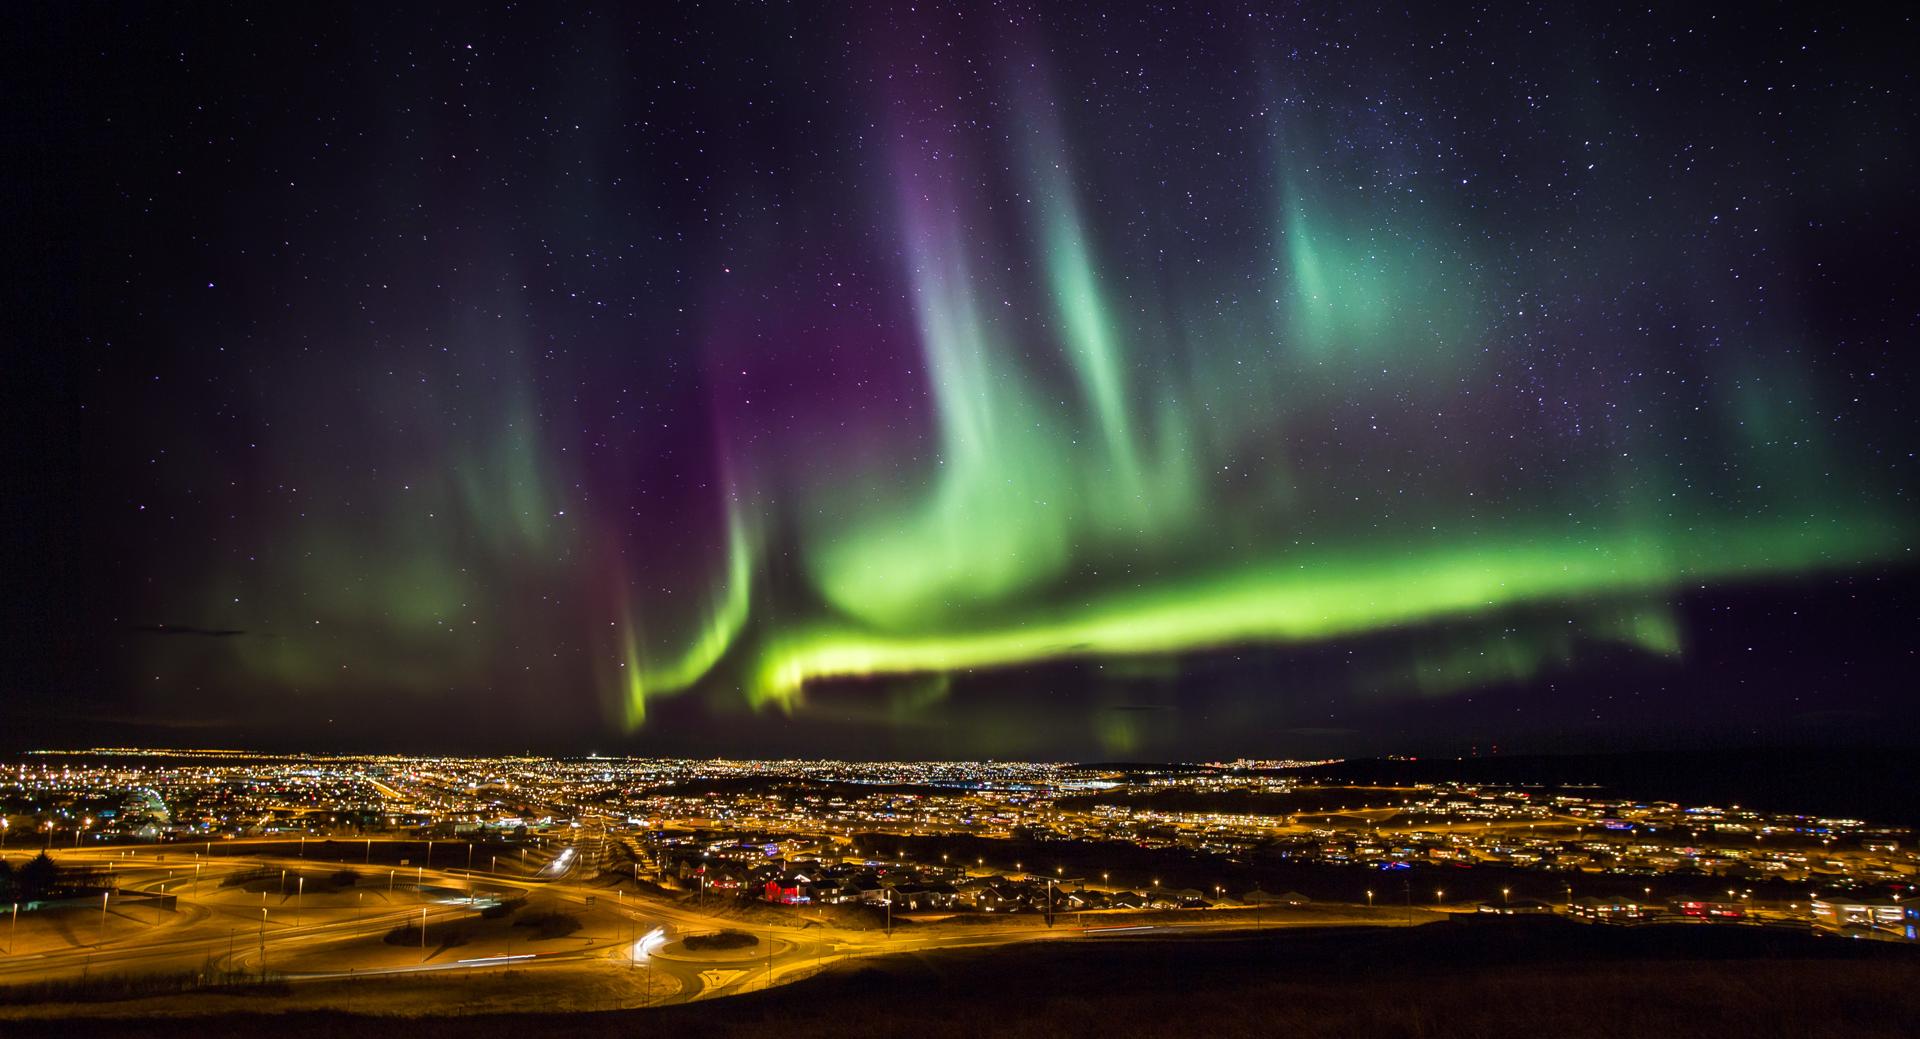 Iceland Northern Lights - Aurora